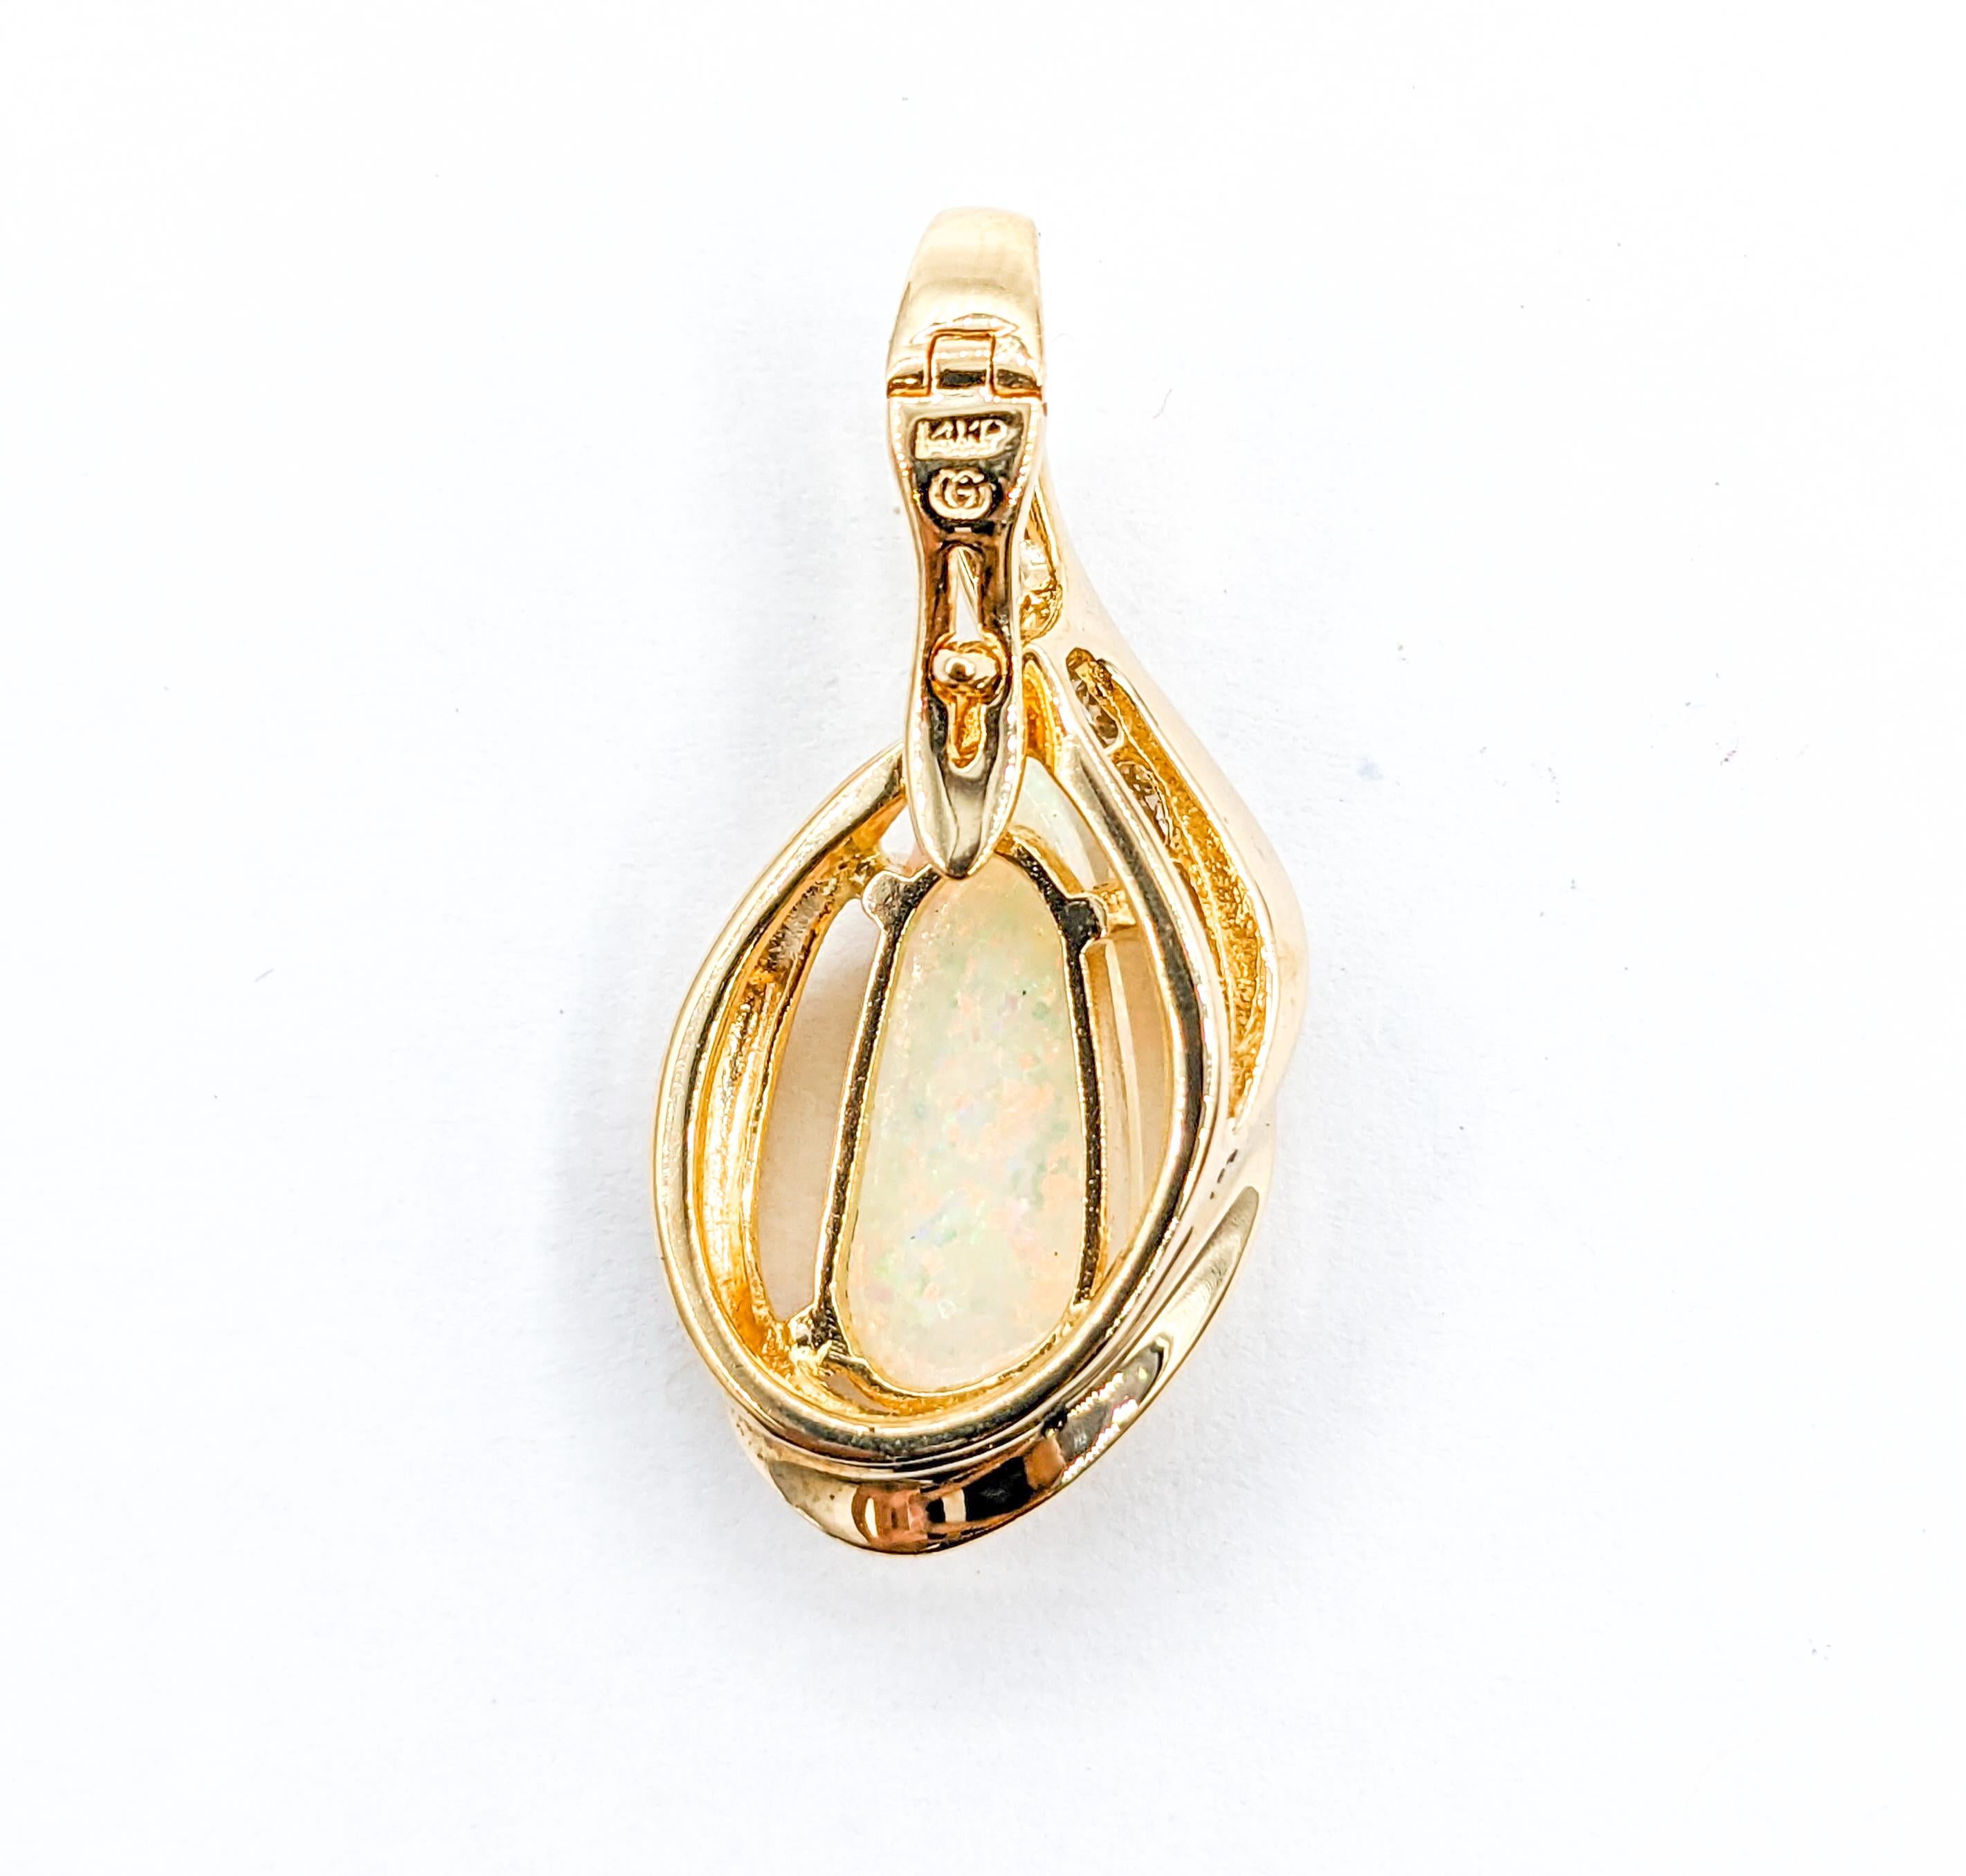 Pendentif en or jaune avec opale et diamant

Voici un pendentif exquis, habilement réalisé en or jaune 14kt. Il est rehaussé de diamants de 0,25ctw, chacun brillant d'une pureté SI et d'un éclat presque incolore. Cette étincelle est complétée par